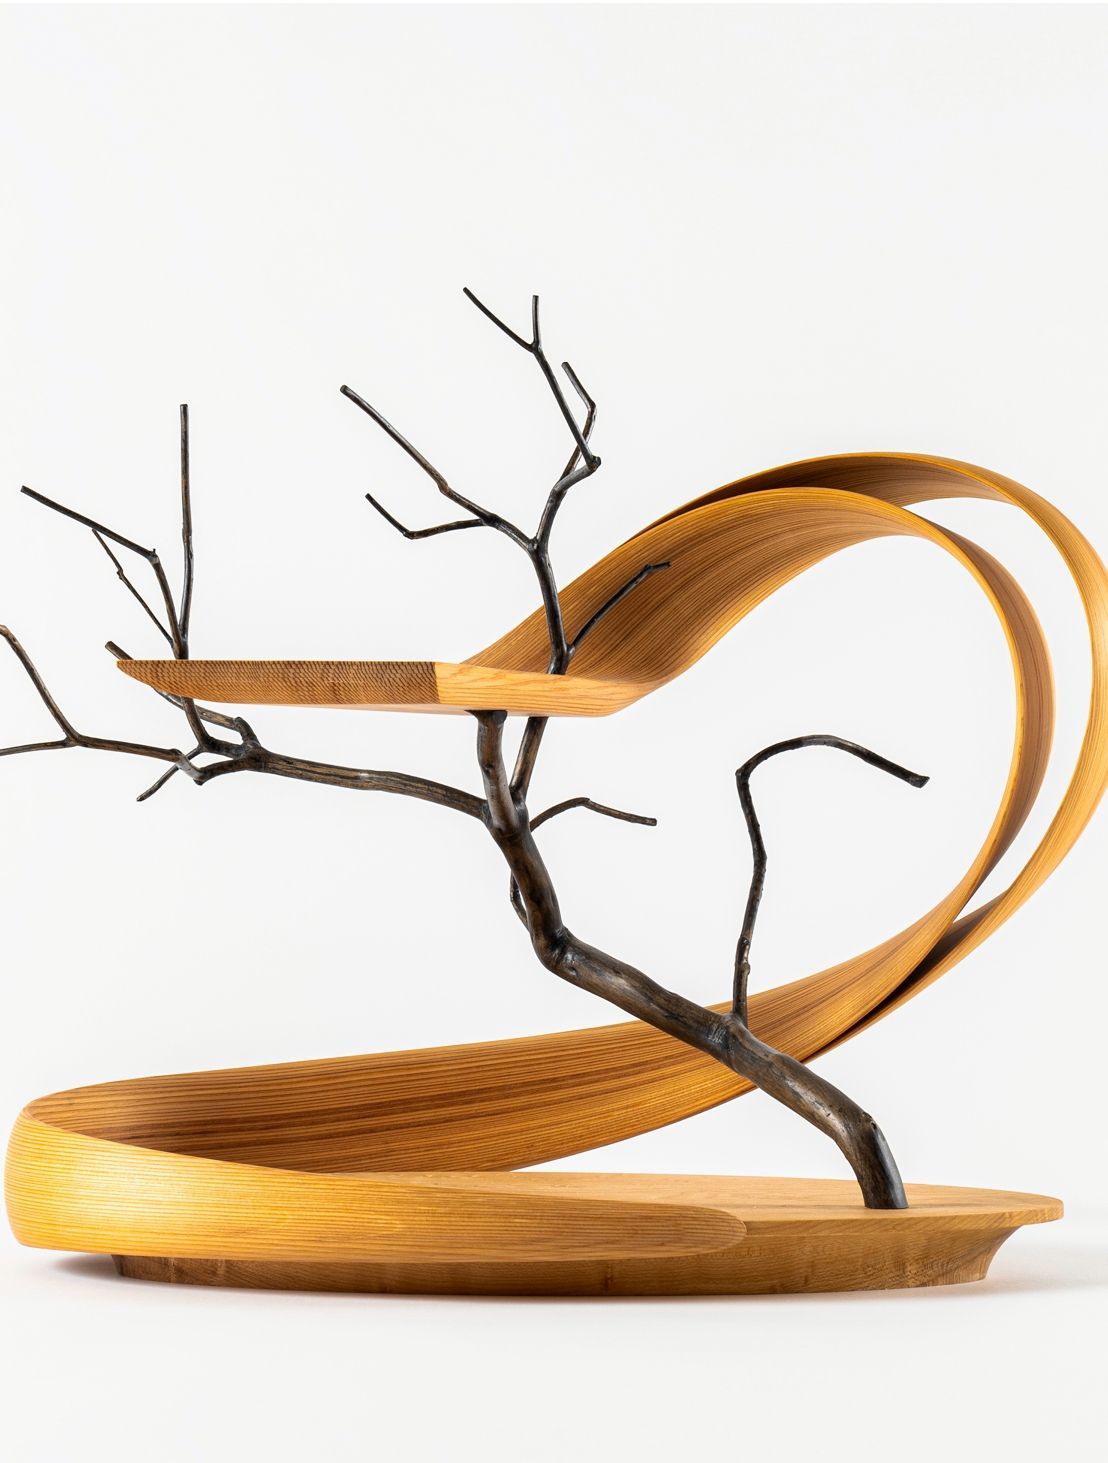 Kenta HIRAI, Wood Furniture